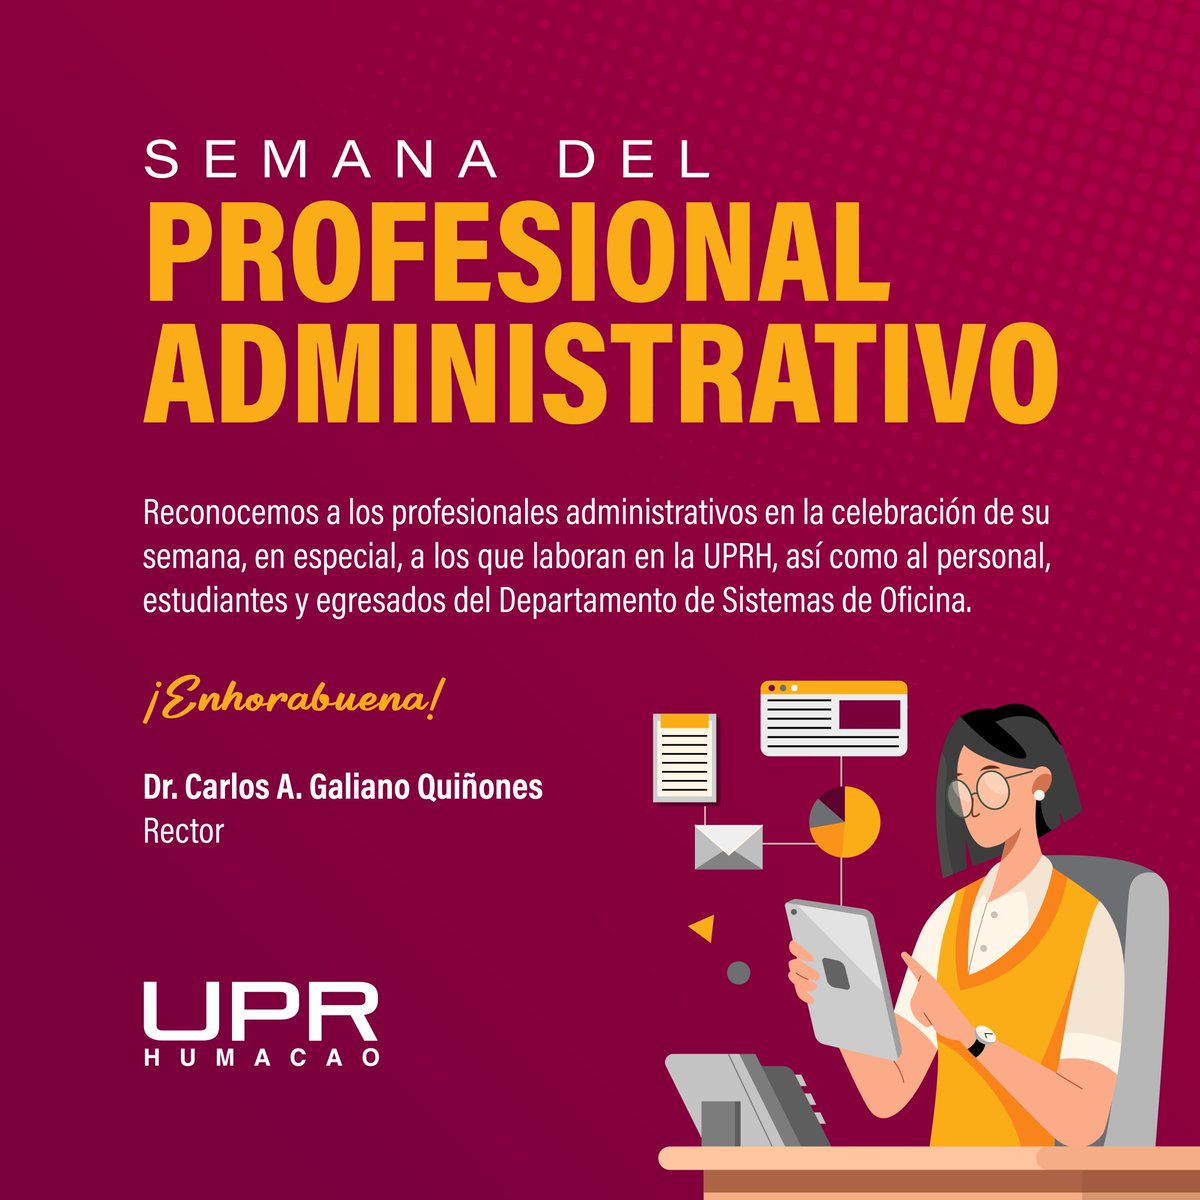 El Dr. Carlos A. Galiano Quiñones, rector de la UPRH, reconoce la extraordinaria labor de los profesionales administrativos en la celebración de su semana.

¡Muchas felicidades!

#UPRH #SiempreBúhos @UPR_Oficial